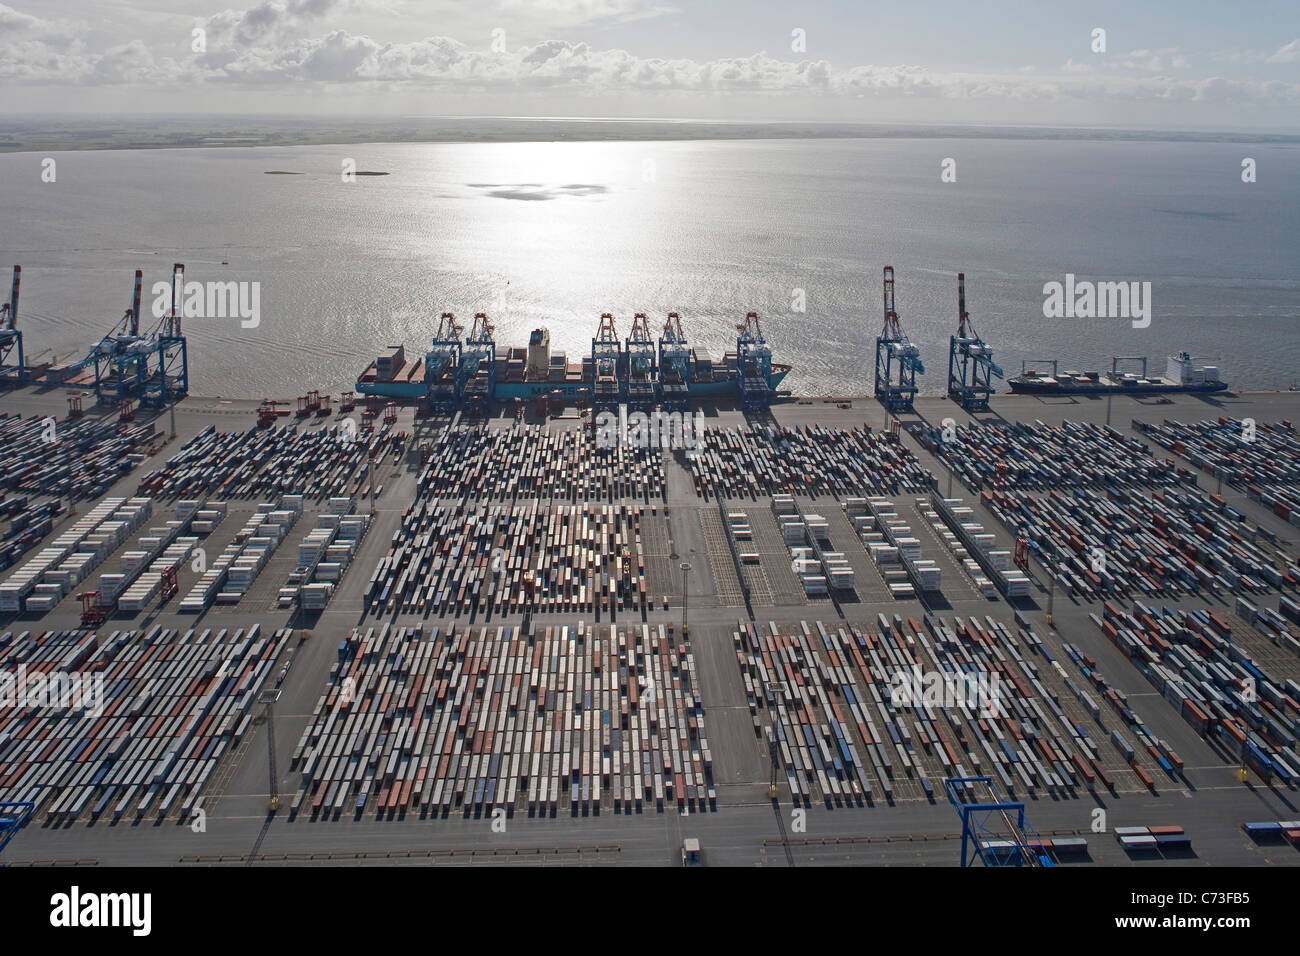 Vue aérienne du port à conteneurs, conteneurs et de grues de chargement dans le rétroéclairage, Bremerhaven, Allemagne du nord Banque D'Images